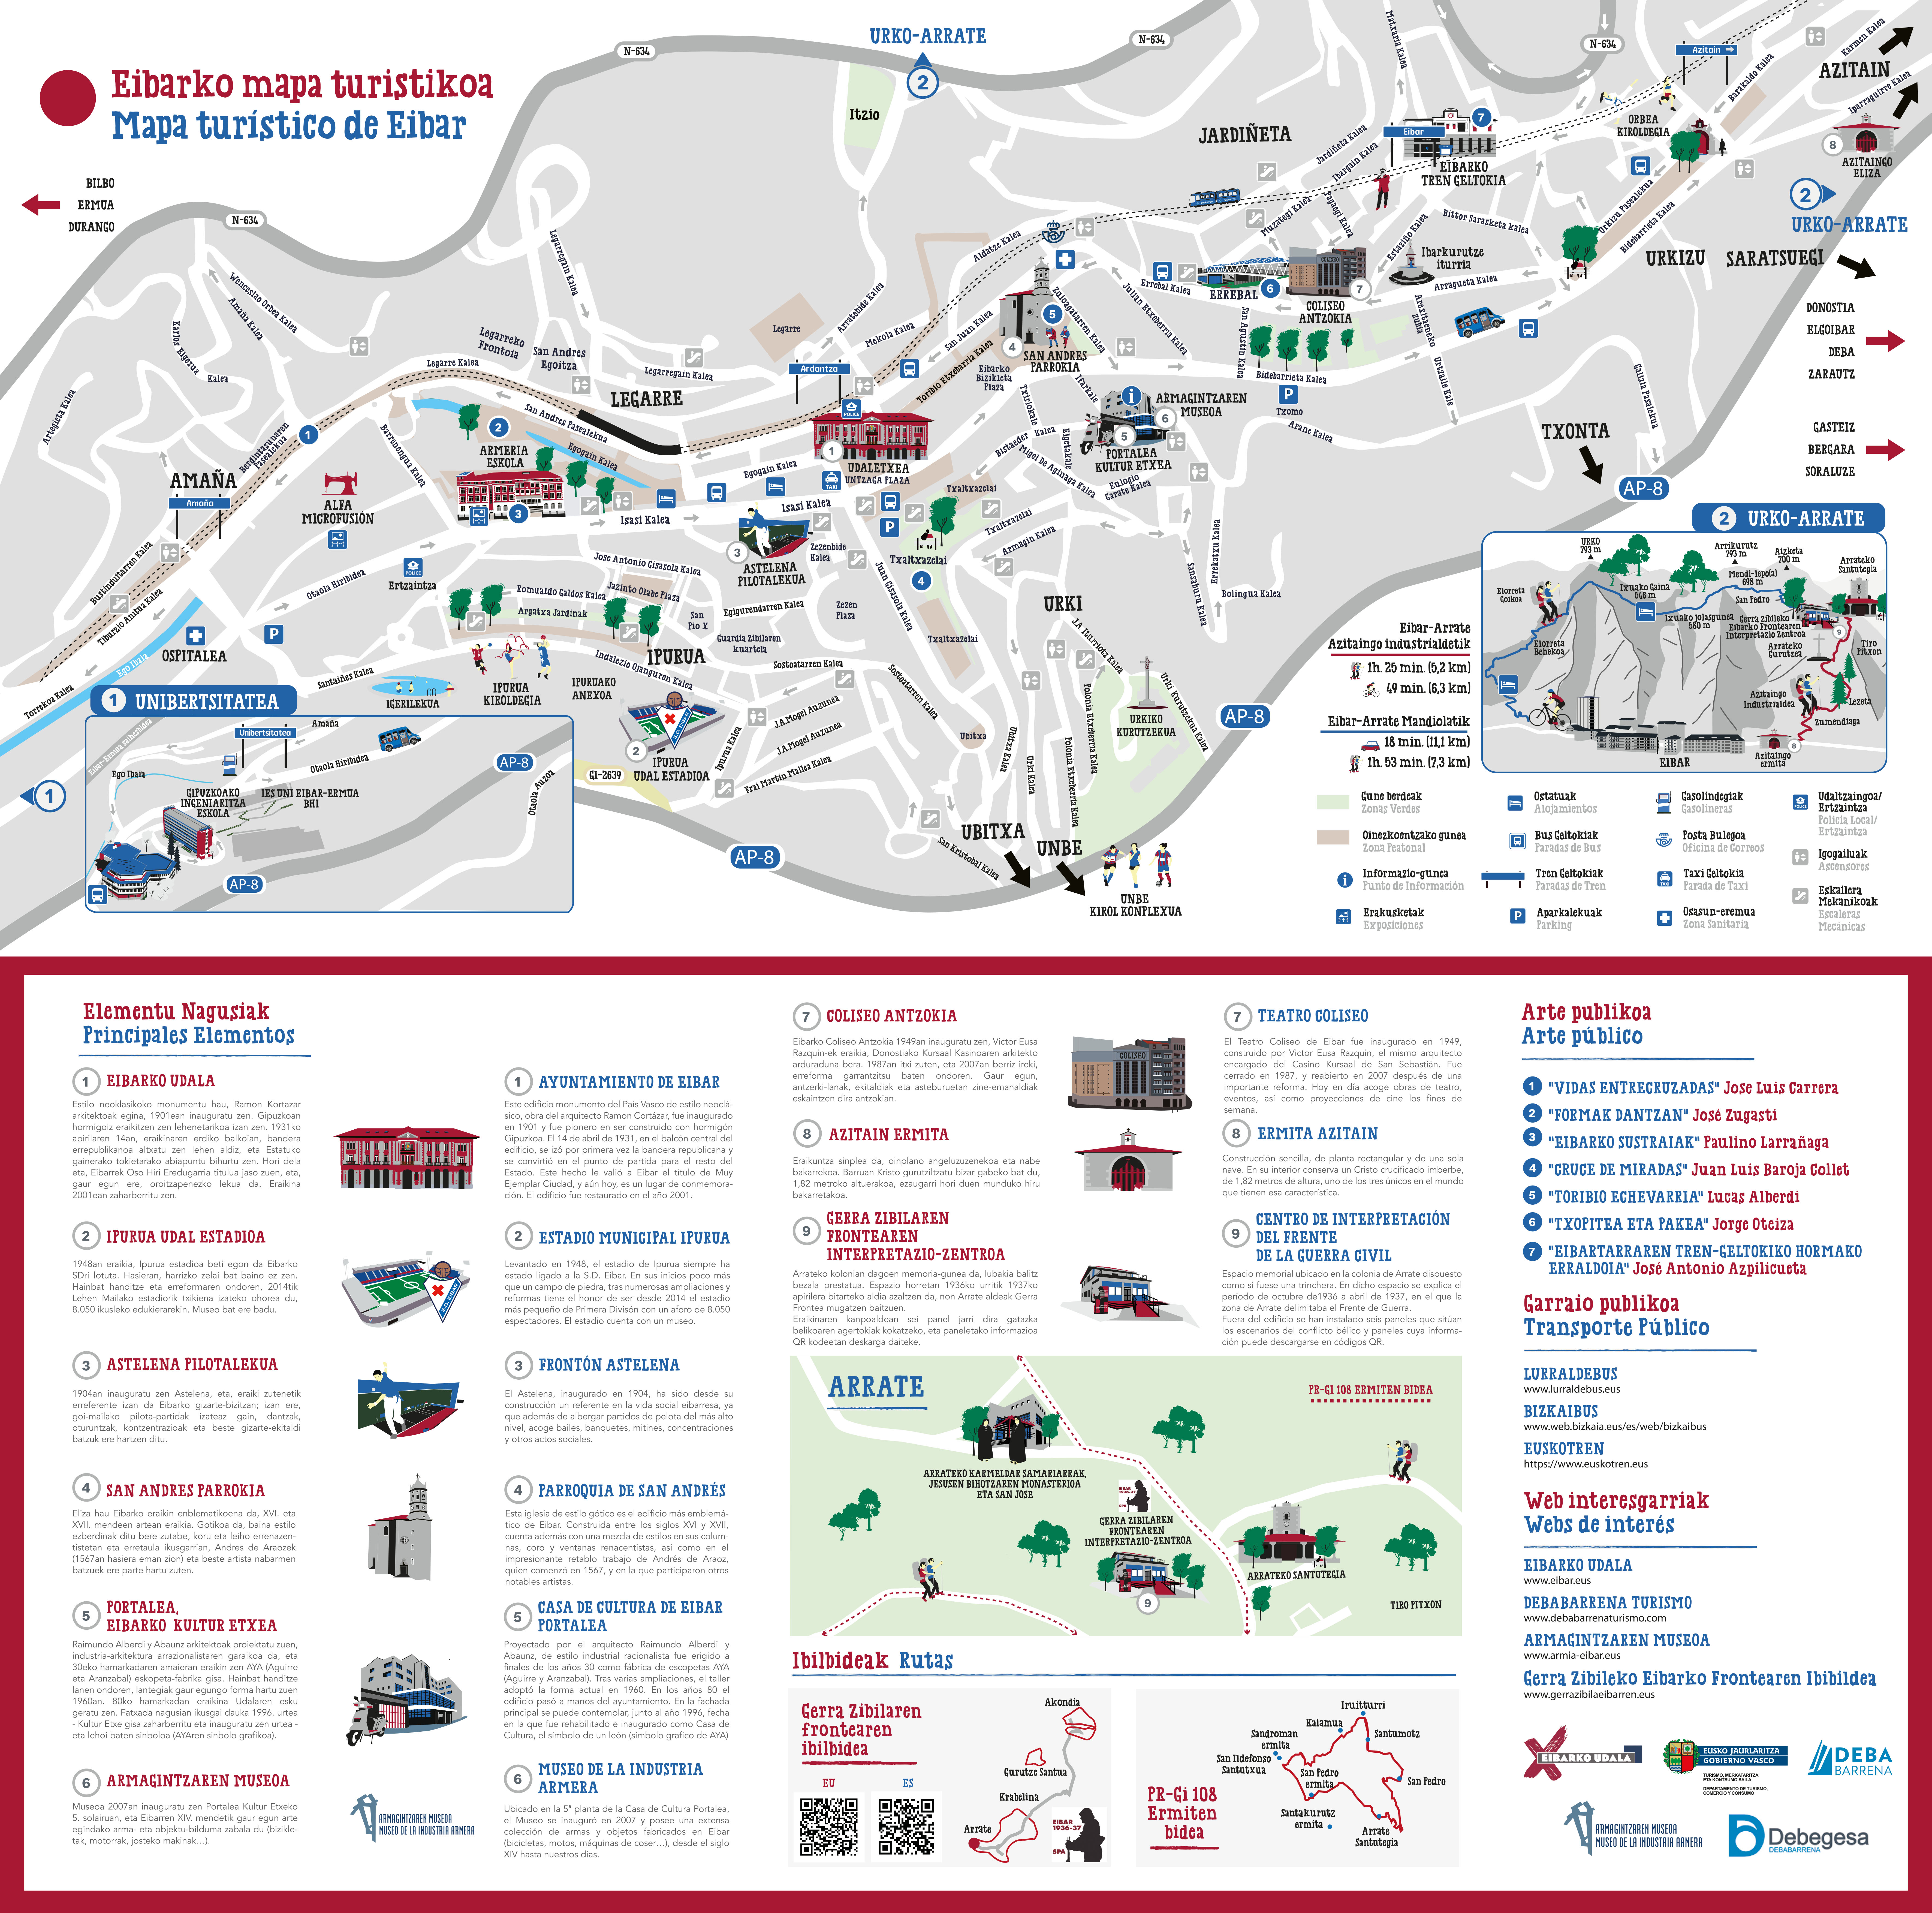 El Ayuntamiento de Eibar ha diseñado un mapa turístico de la ciudad